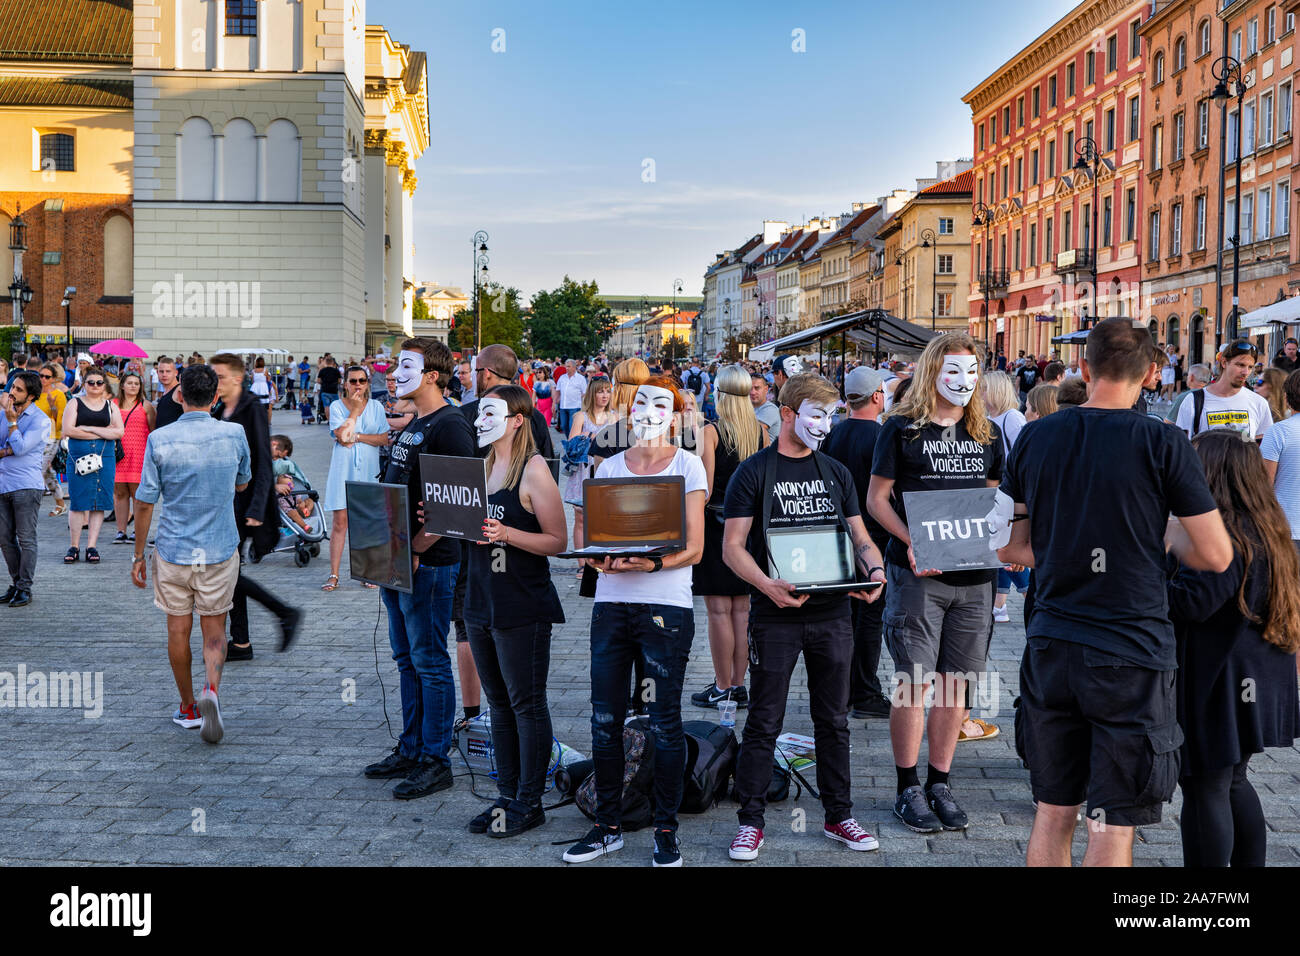 Varsavia, Polonia - 24 agosto 2019: Persone da anonimo per i senza voce (AV) i diritti degli animali organizzazione nel cubo di verità, dimostrazione pacifica a Foto Stock